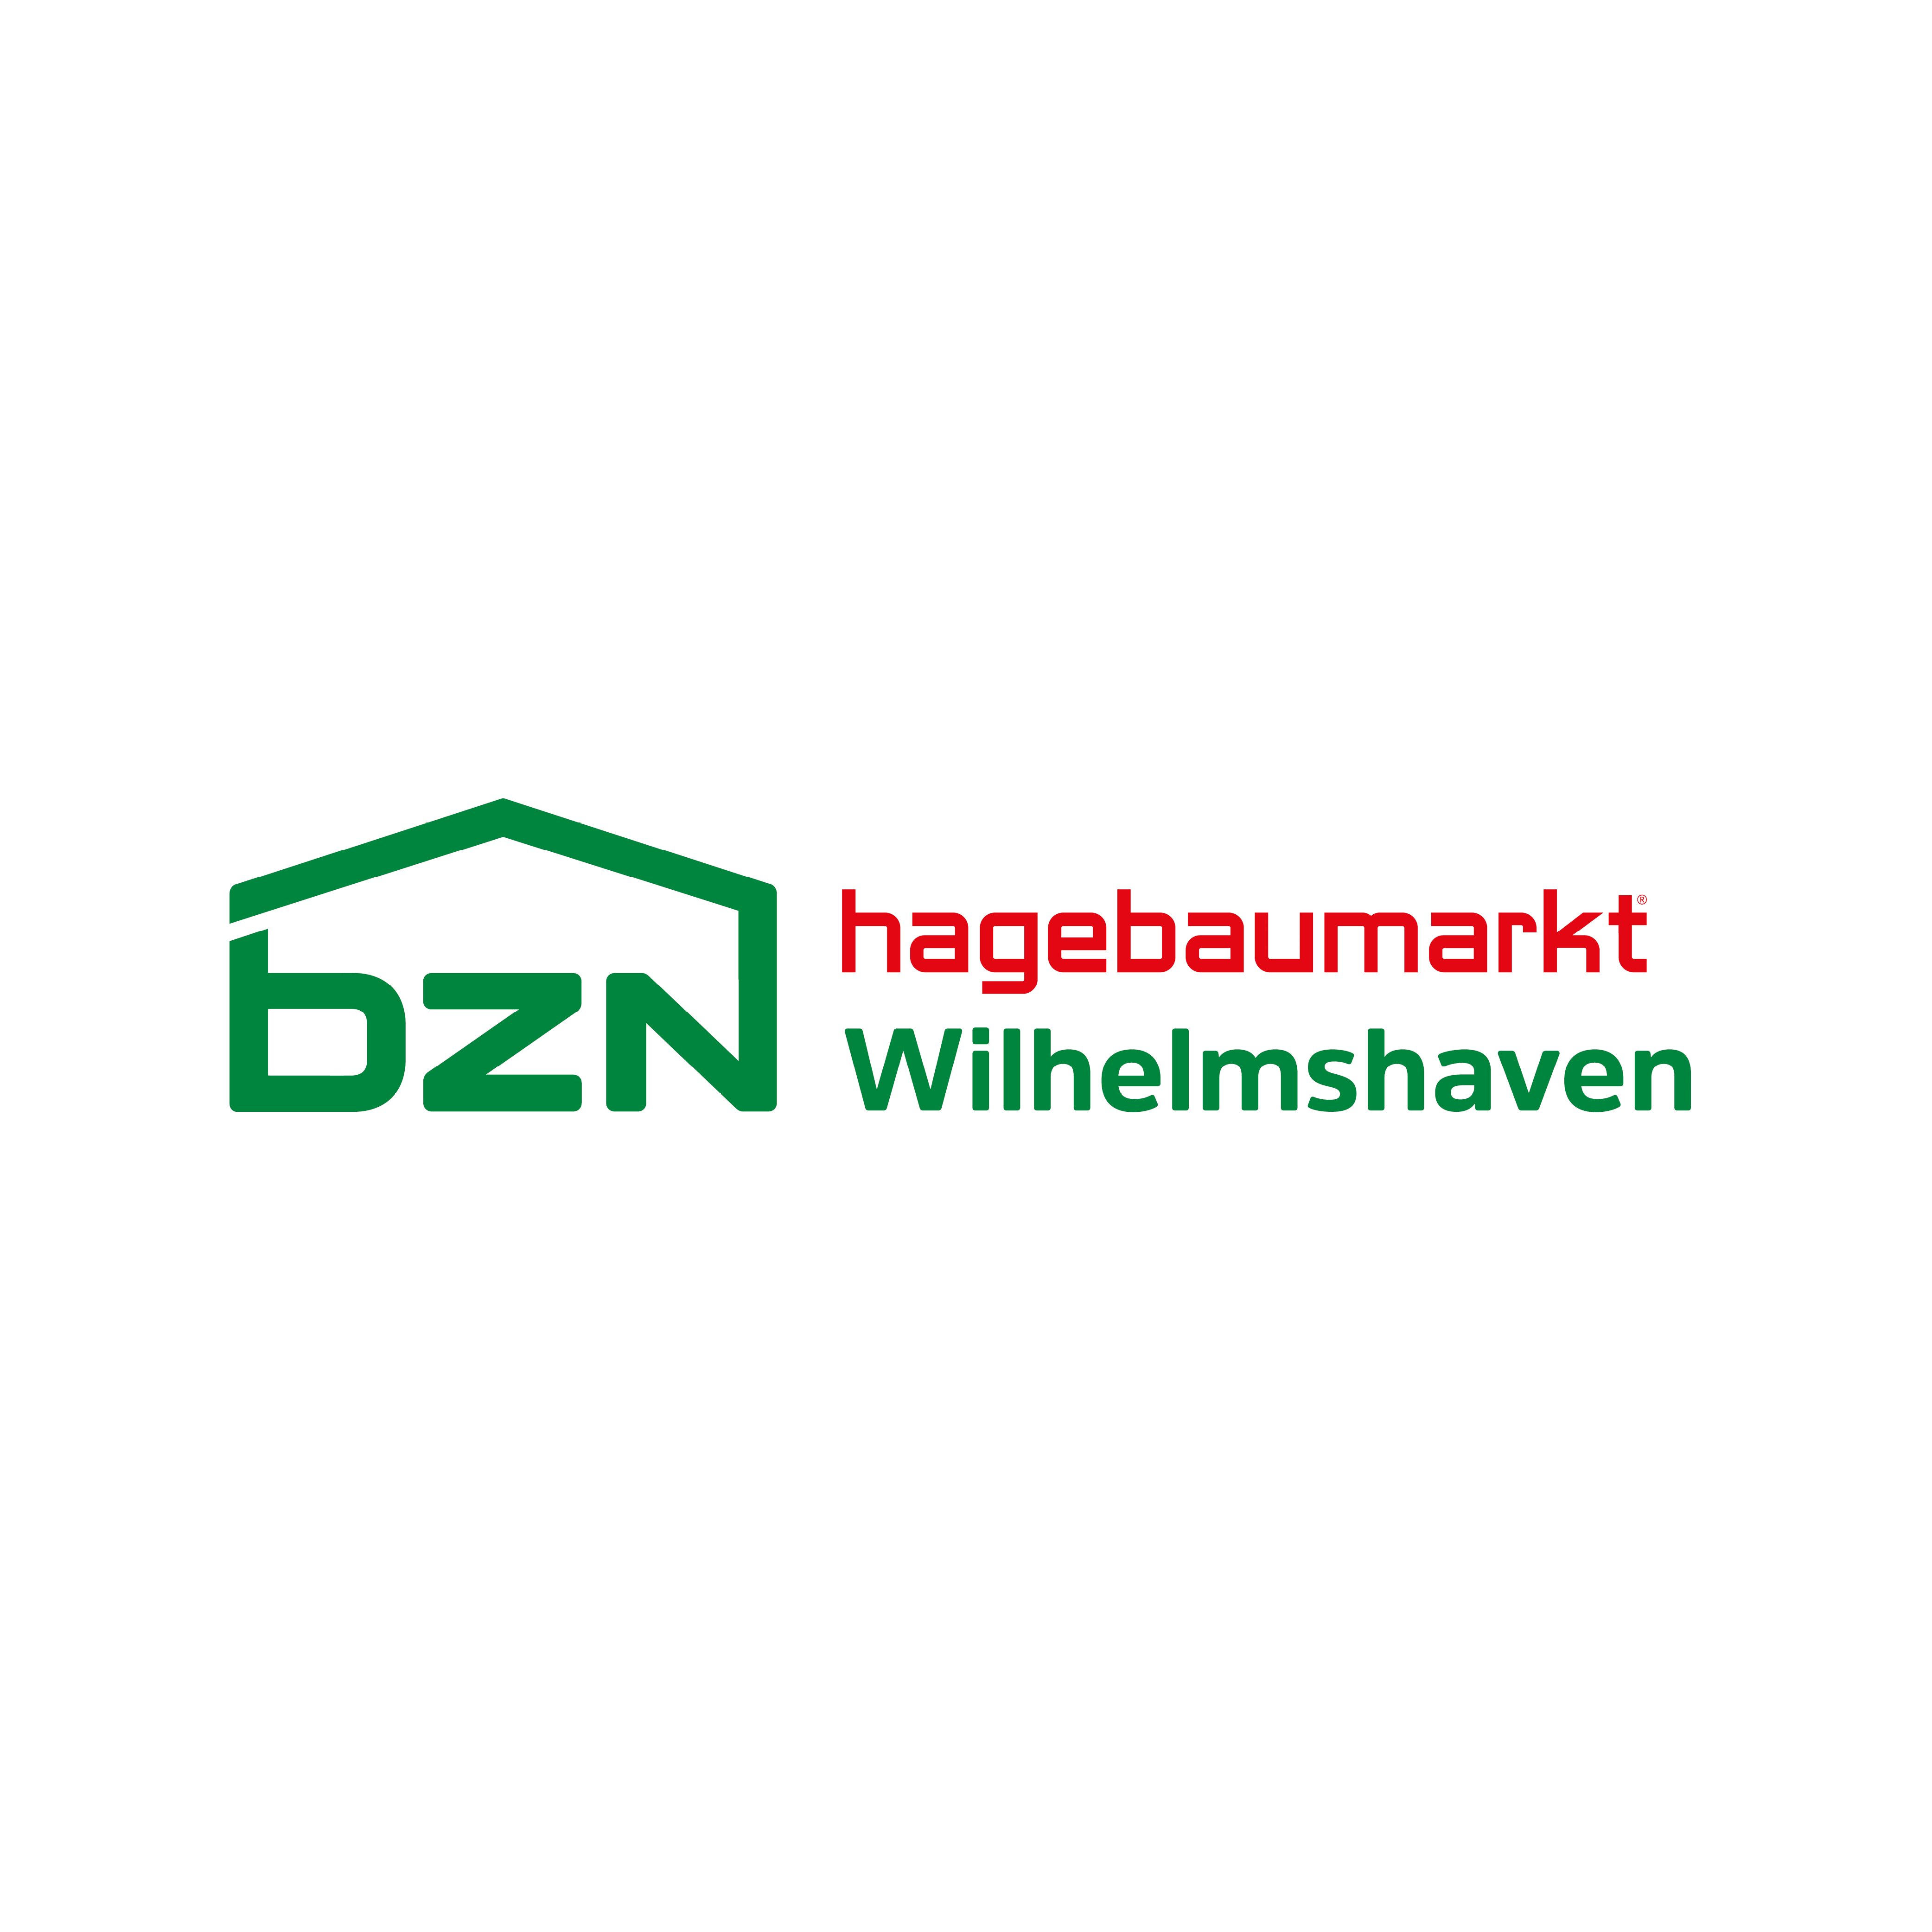 BZN Hagebau Wilhelmshaven GmbH & Co. KG in Wilhelmshaven - Logo